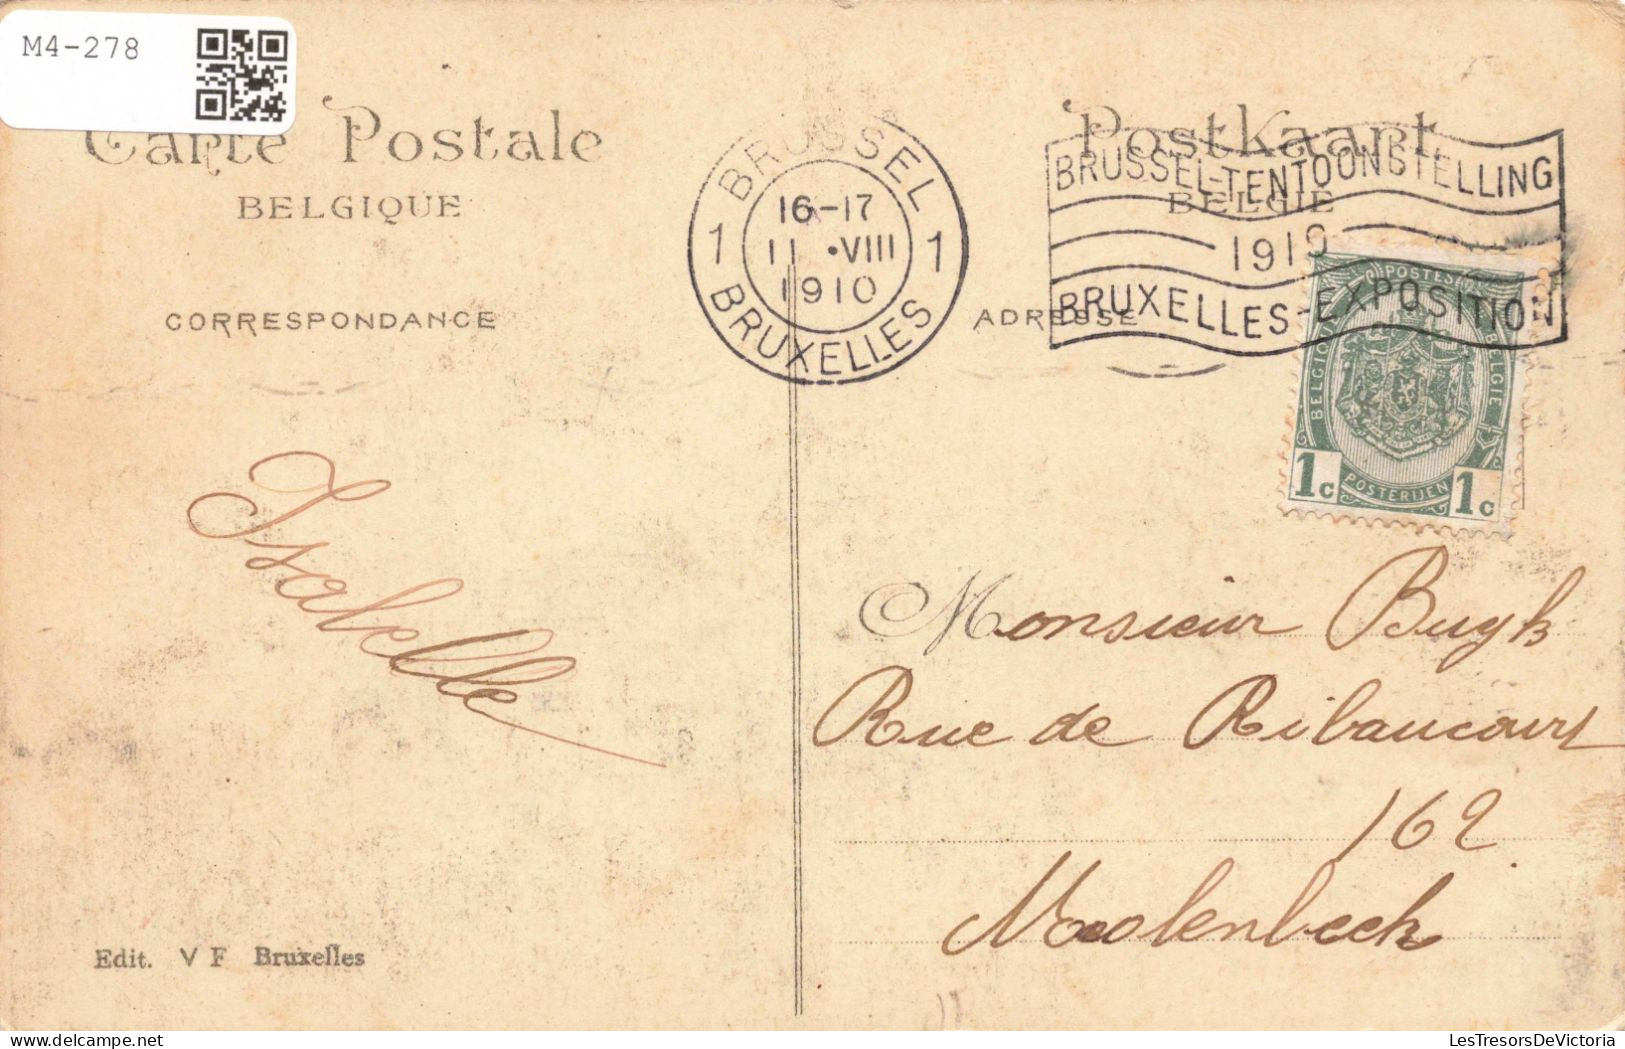 BELGIQUE - Bruxelles 1910 - Pavillon Du Brésil - Colorisé - Carte Postale Ancienne - Mostre Universali